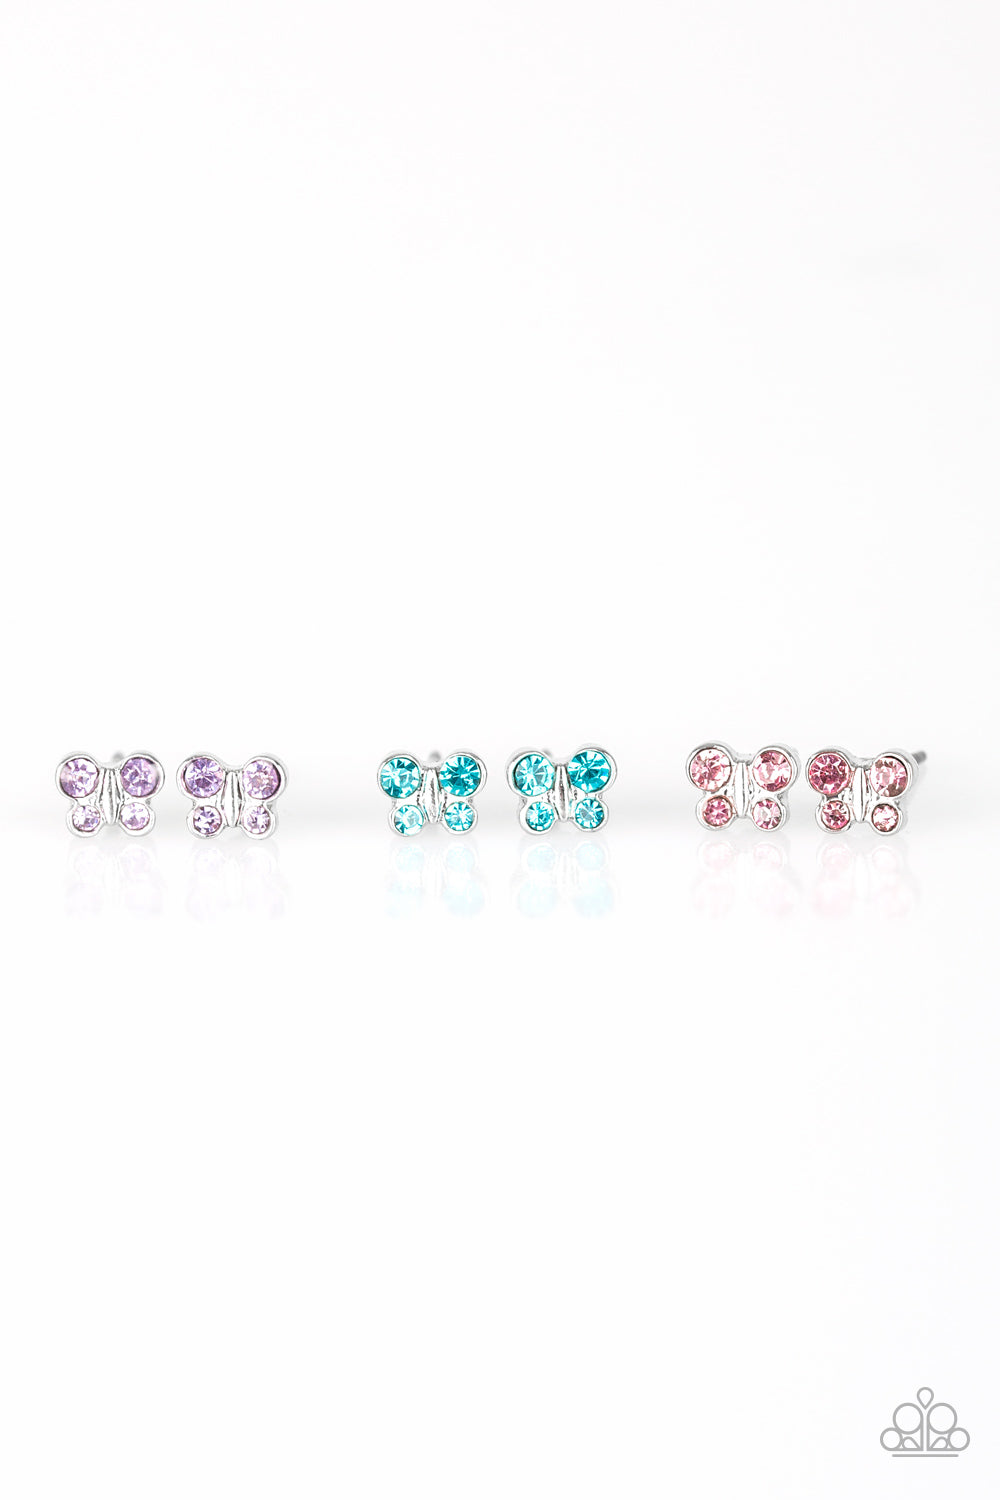 Starlet Shimmer Butterfly Rhinestone Earrings - Susan's Jewelry Shop